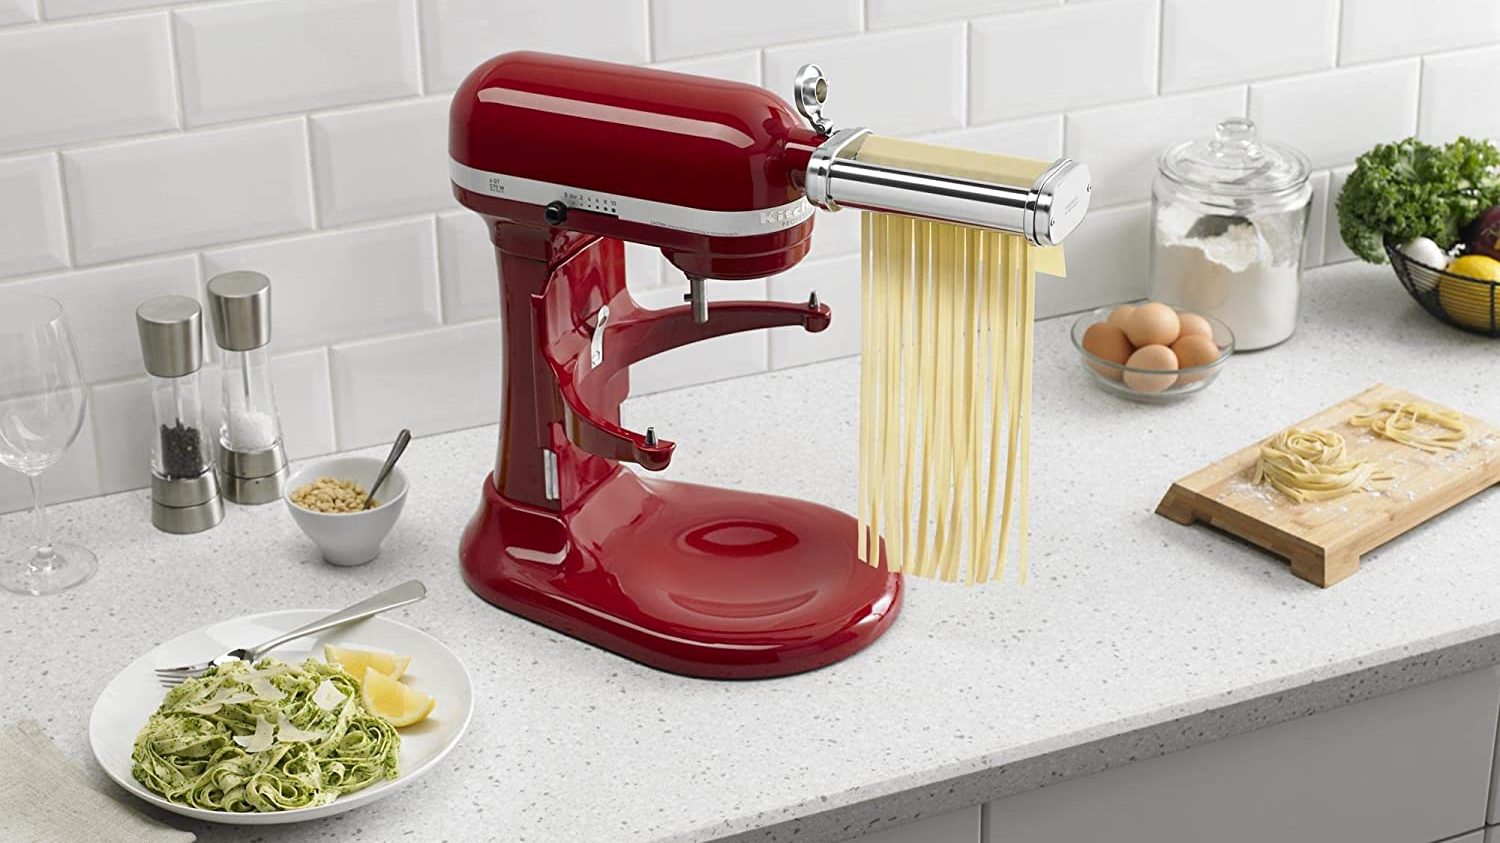 KitchenAid pasta maker